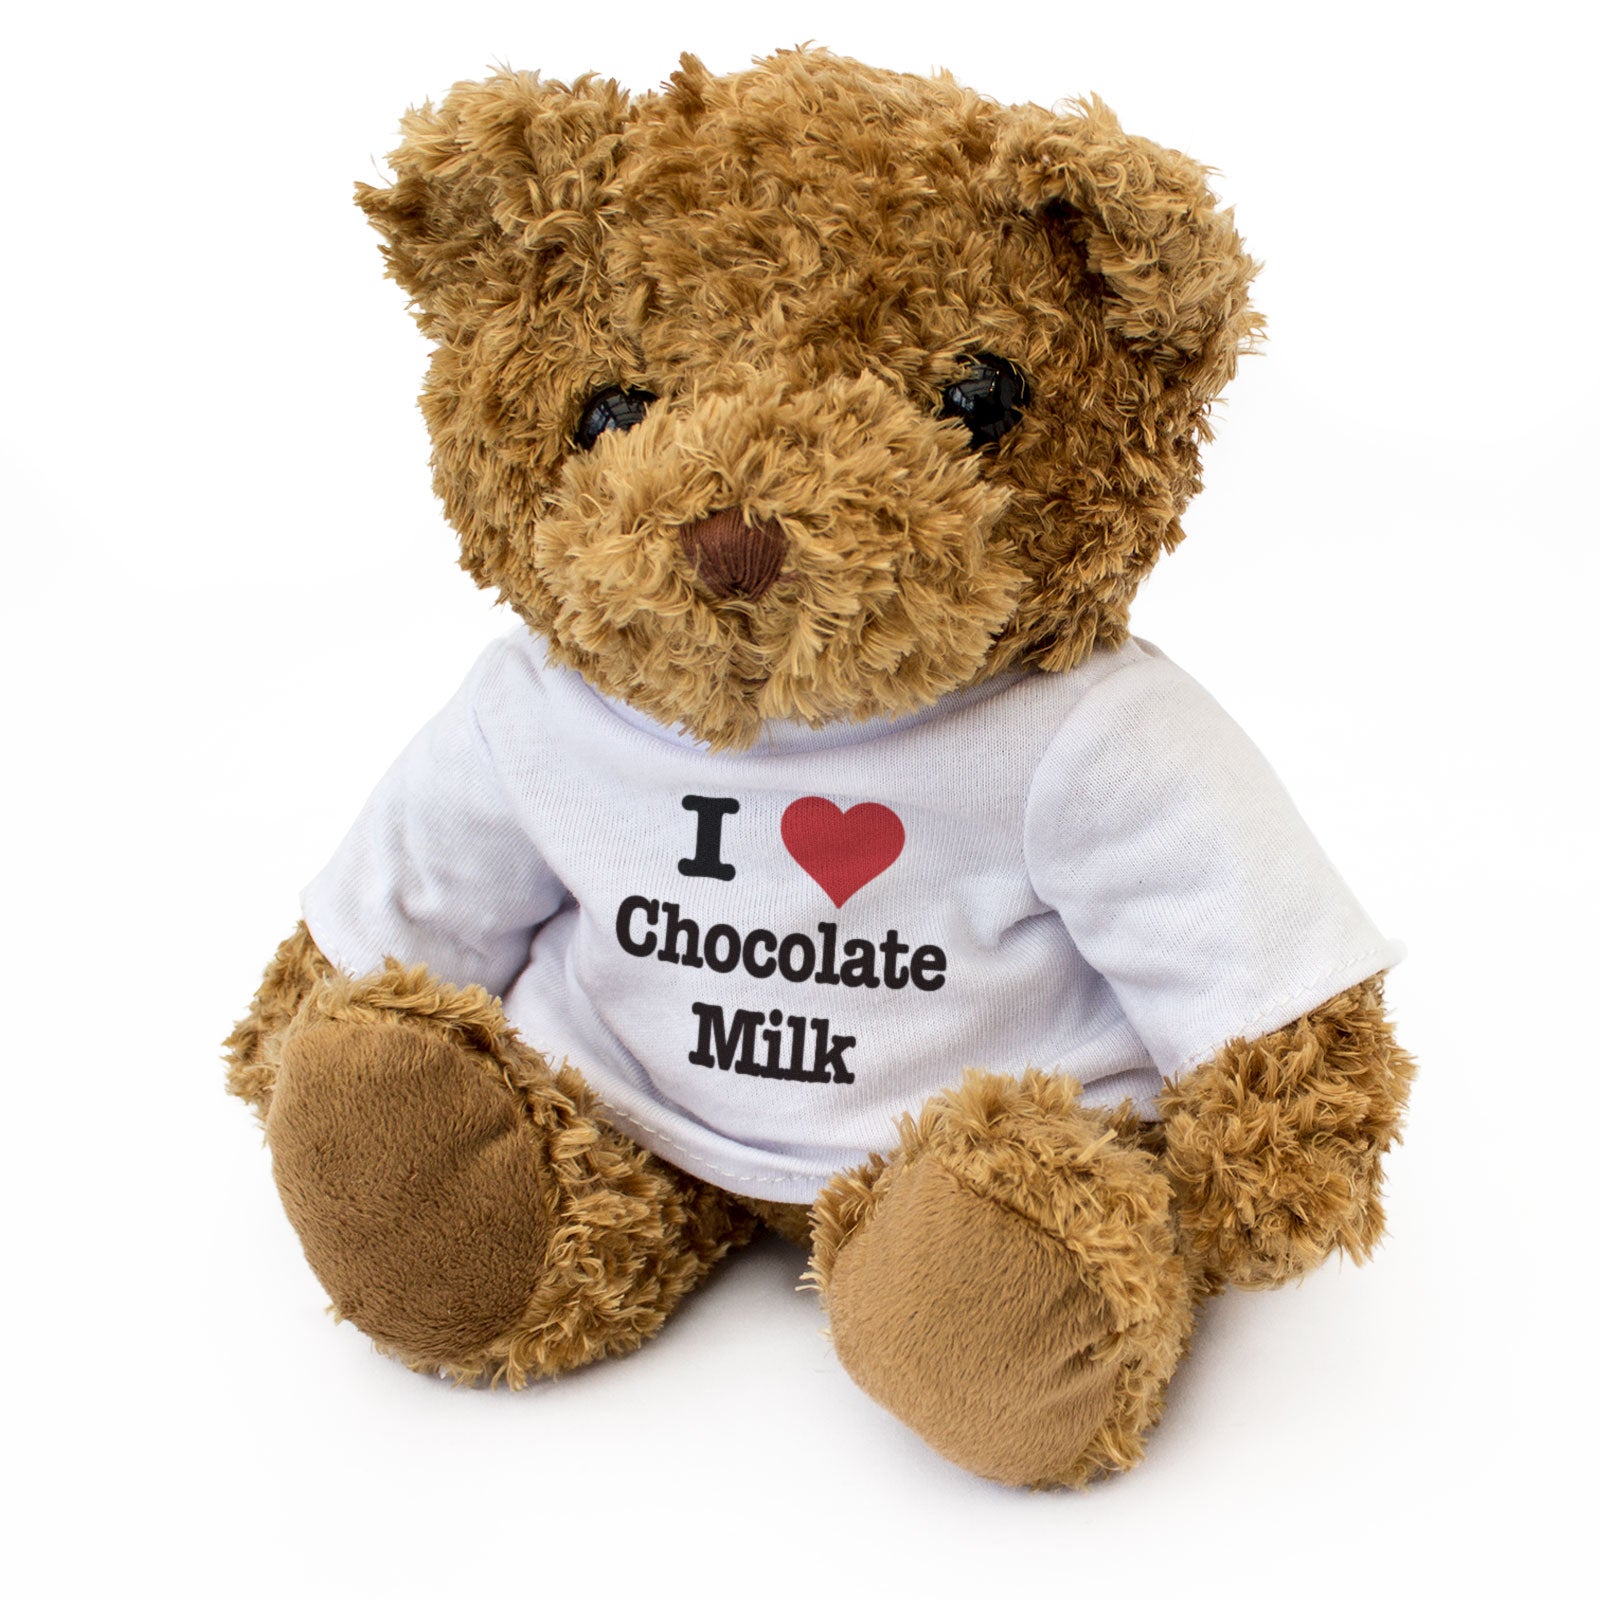 I Love Chocolate Milk - Teddy Bear